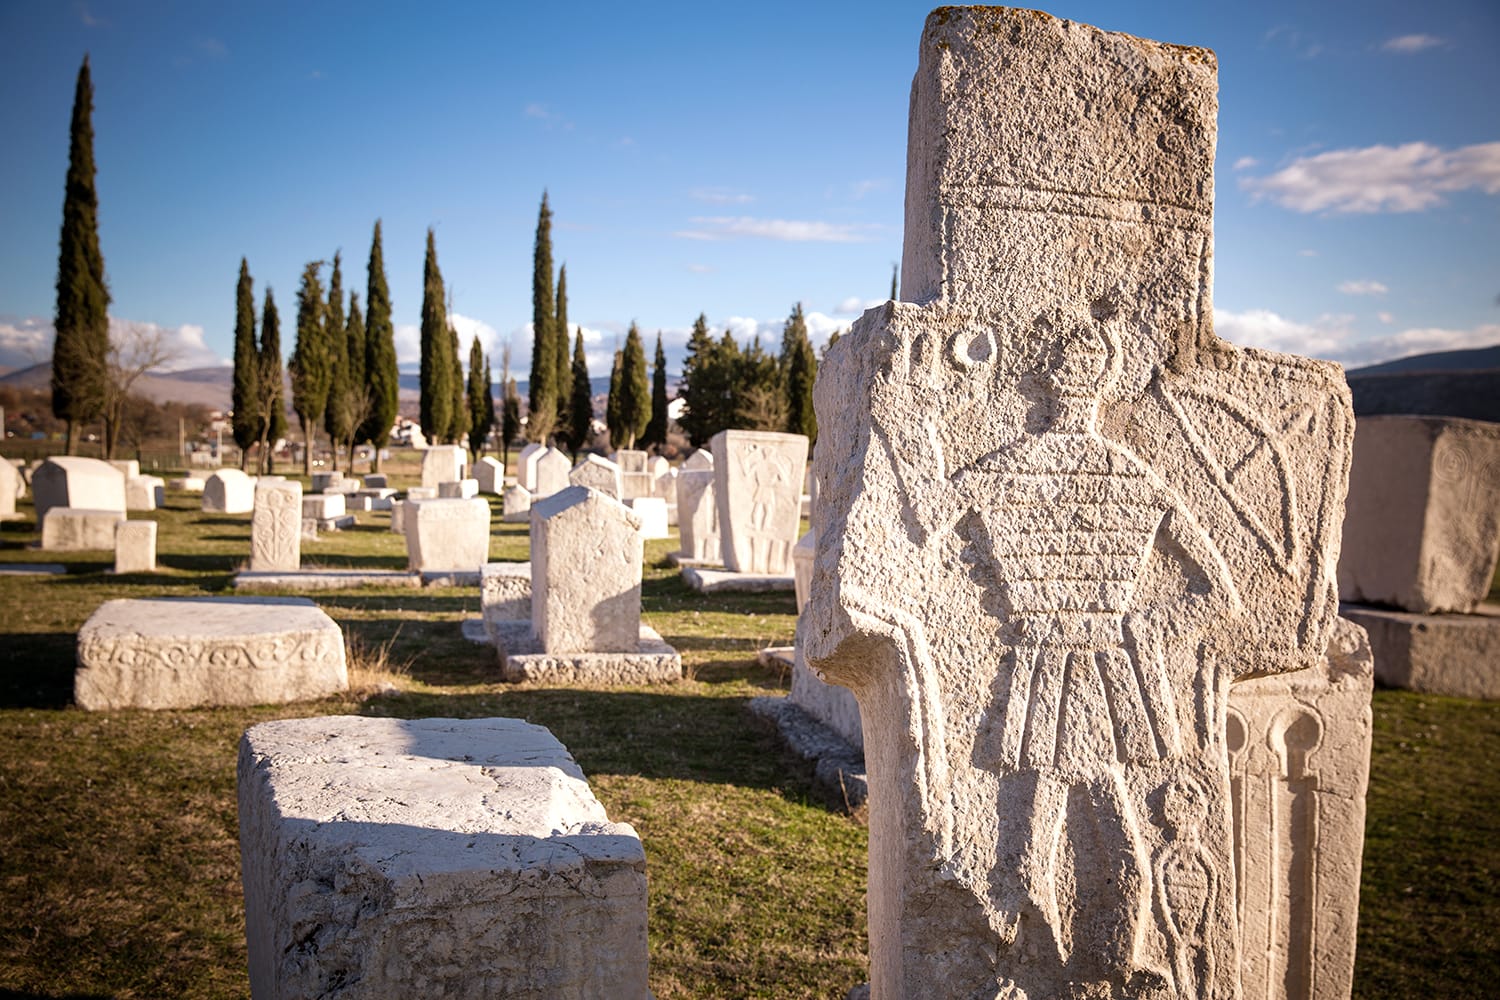 Radimlja necropolis in Bosnia and Hercegovina